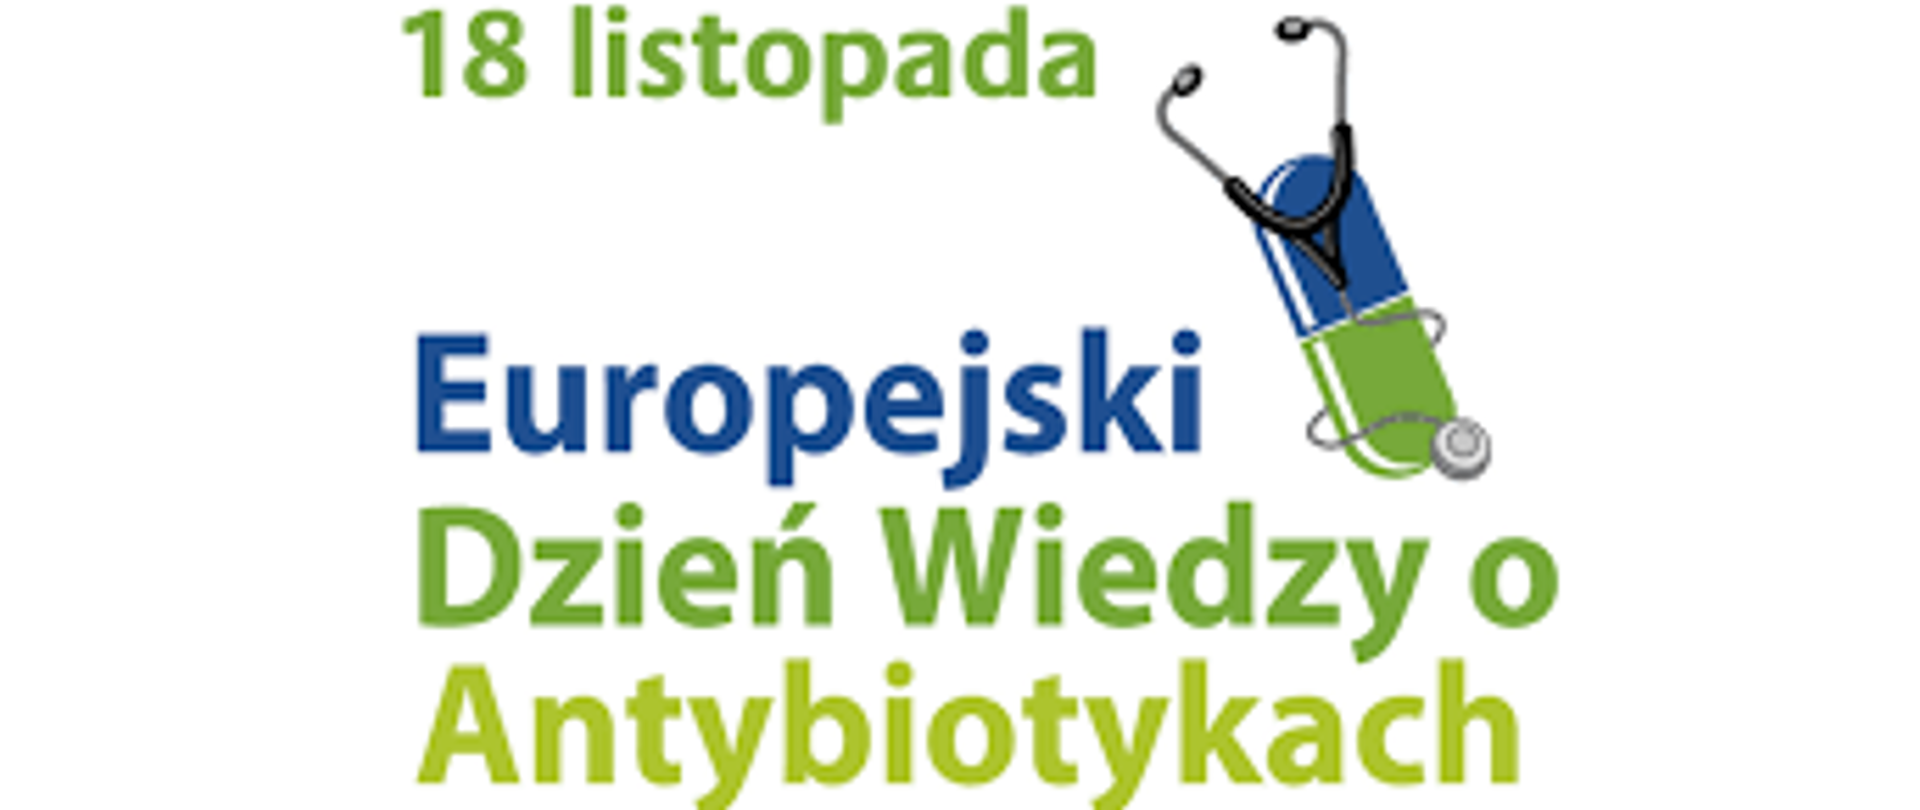 Europejski_dzien_wiedzy_o_antybiotykach